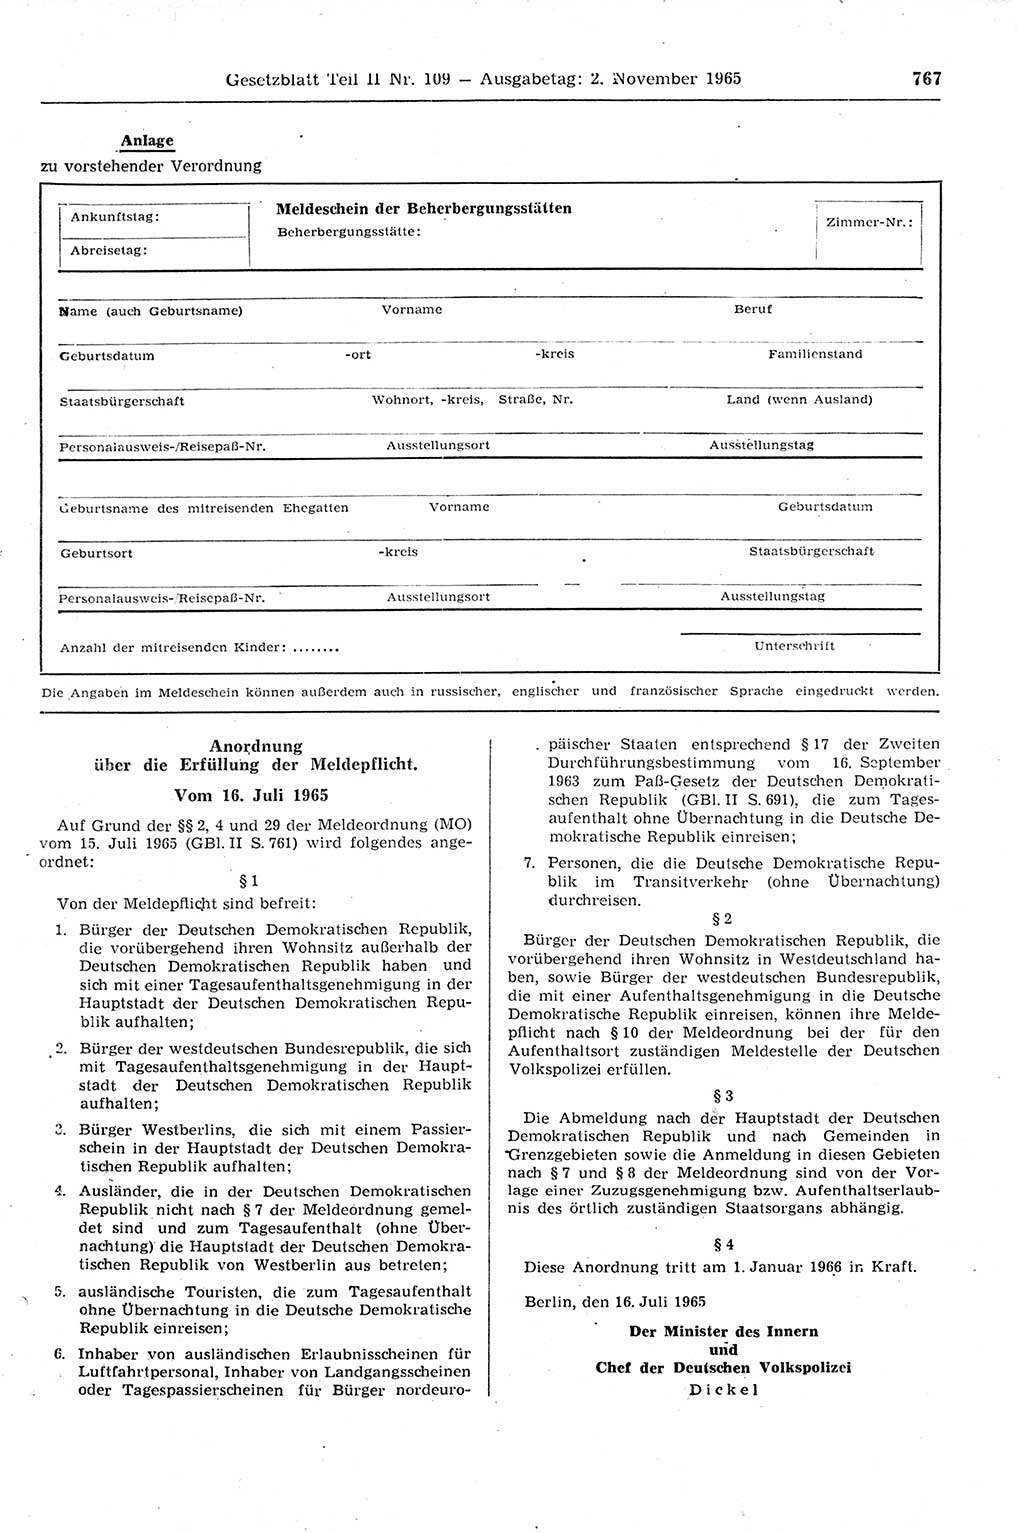 Gesetzblatt (GBl.) der Deutschen Demokratischen Republik (DDR) Teil ⅠⅠ 1965, Seite 767 (GBl. DDR ⅠⅠ 1965, S. 767)